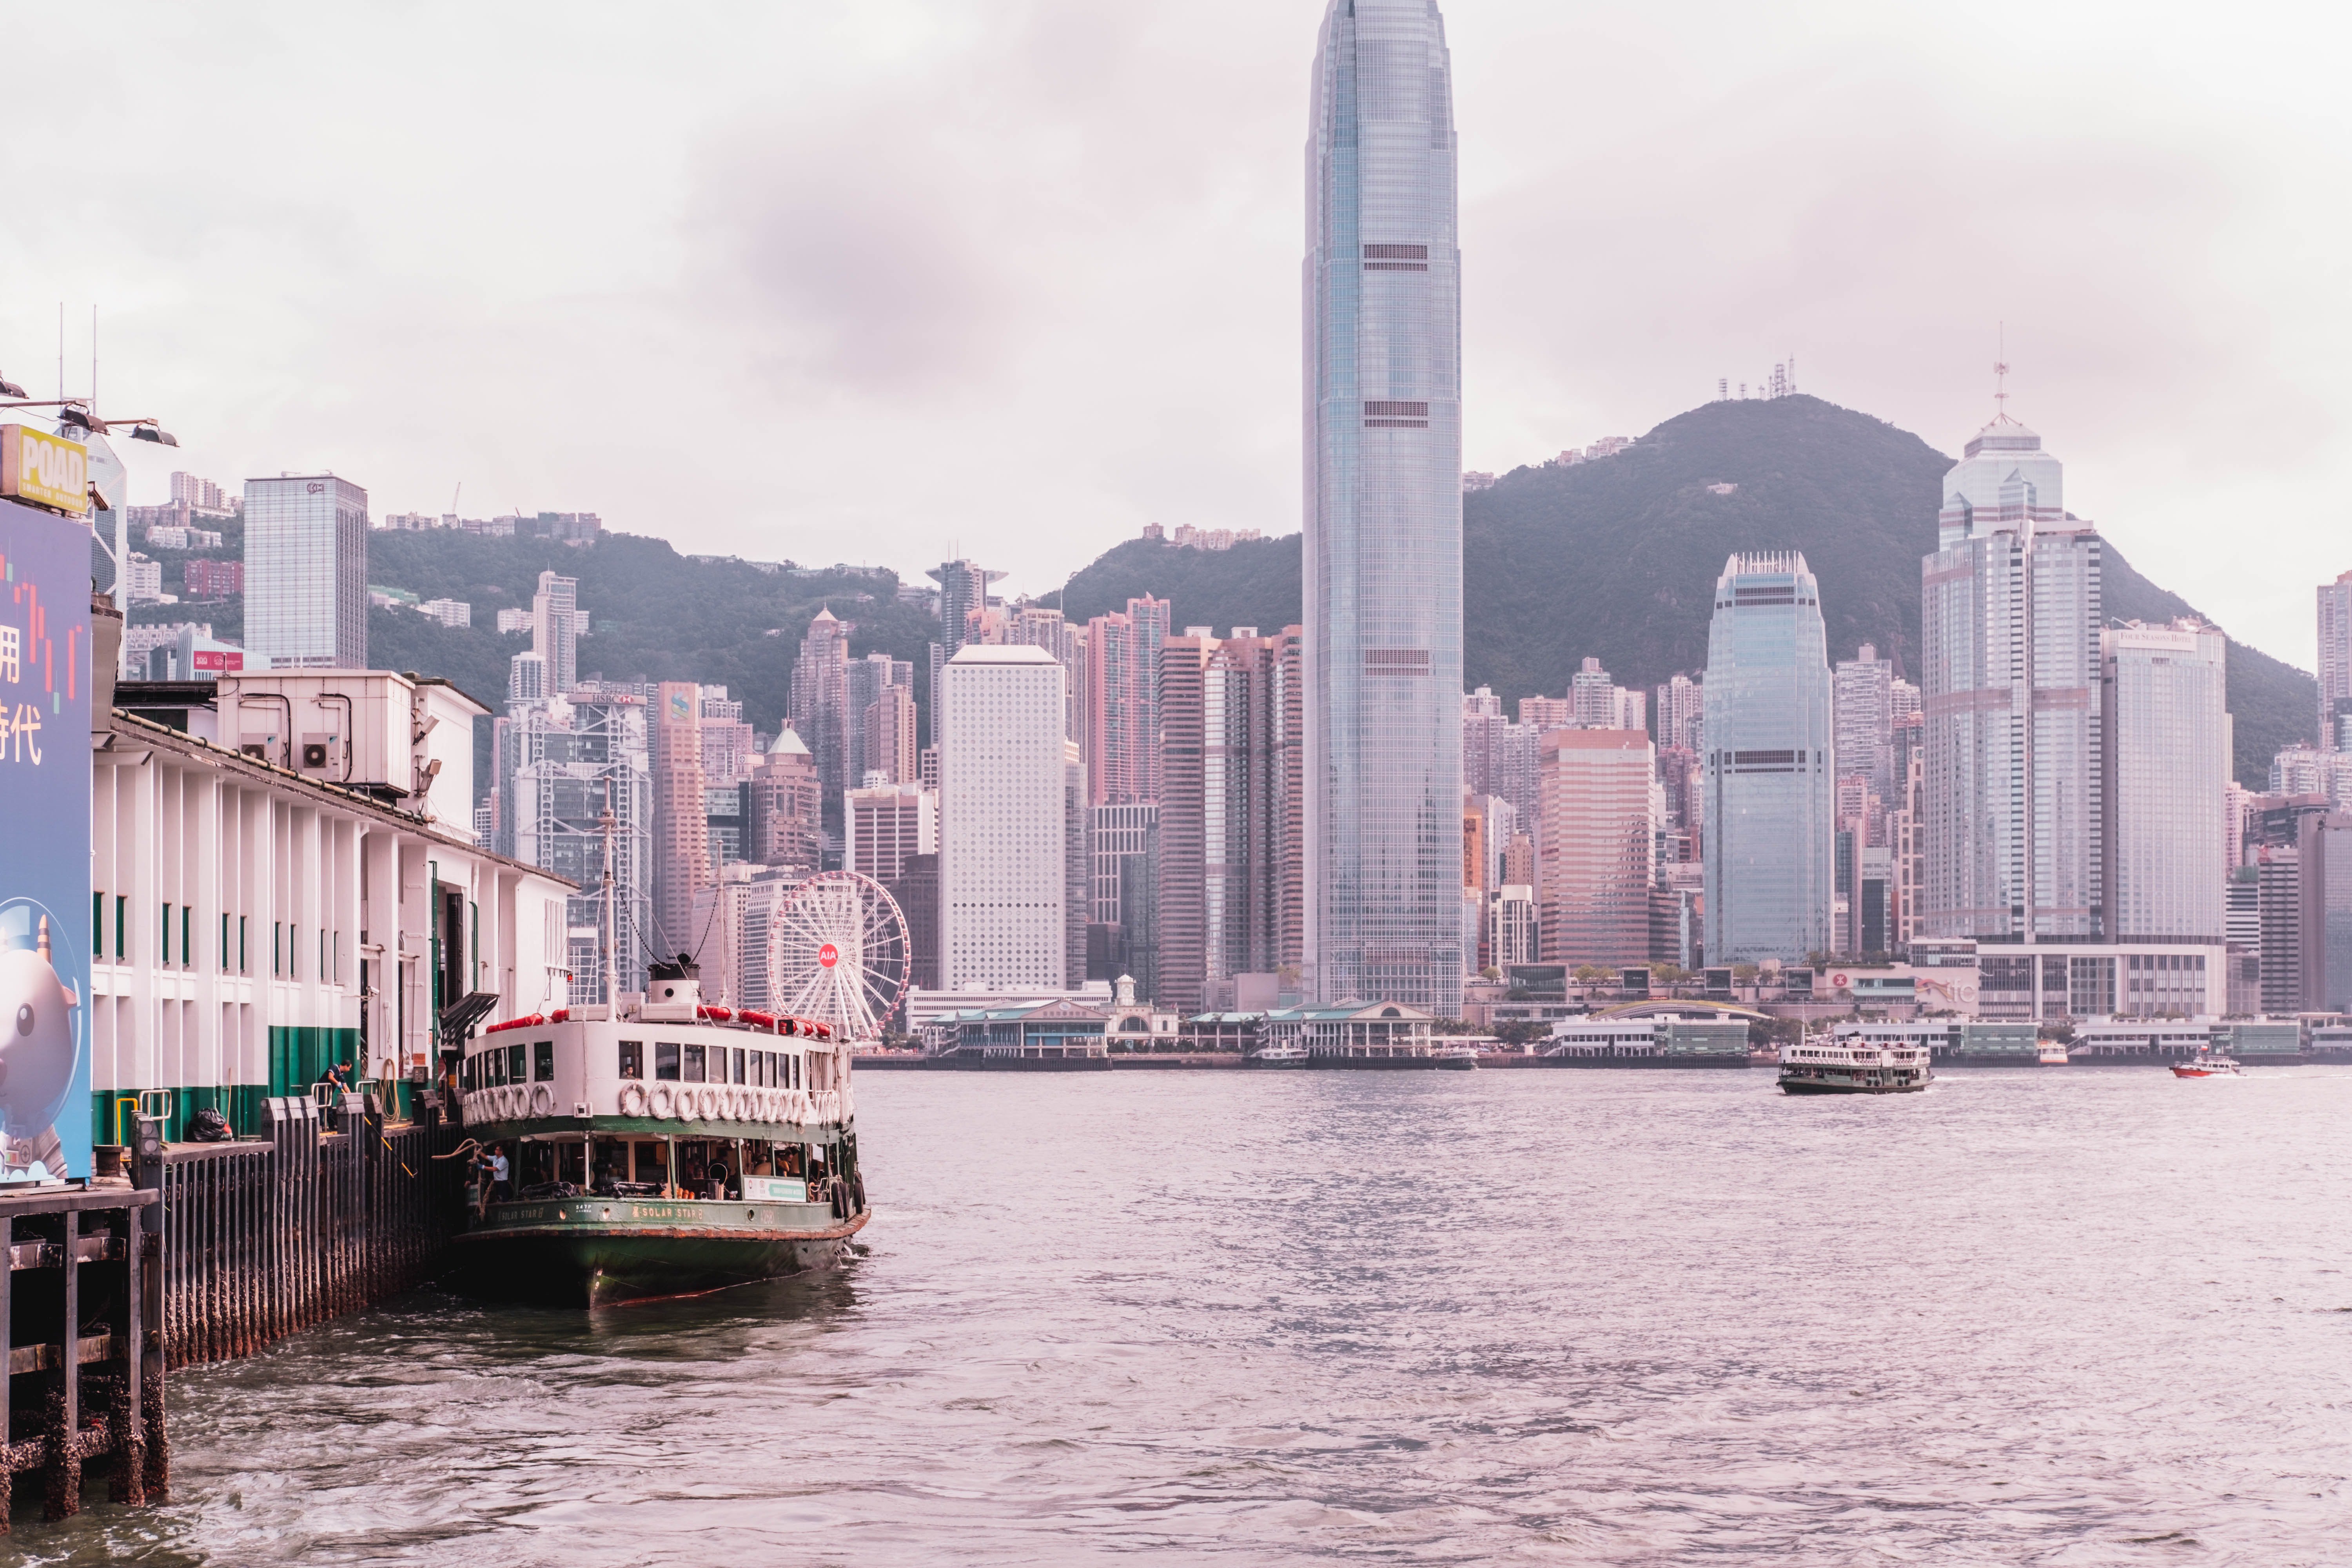 Hong Kong Kowloon Island